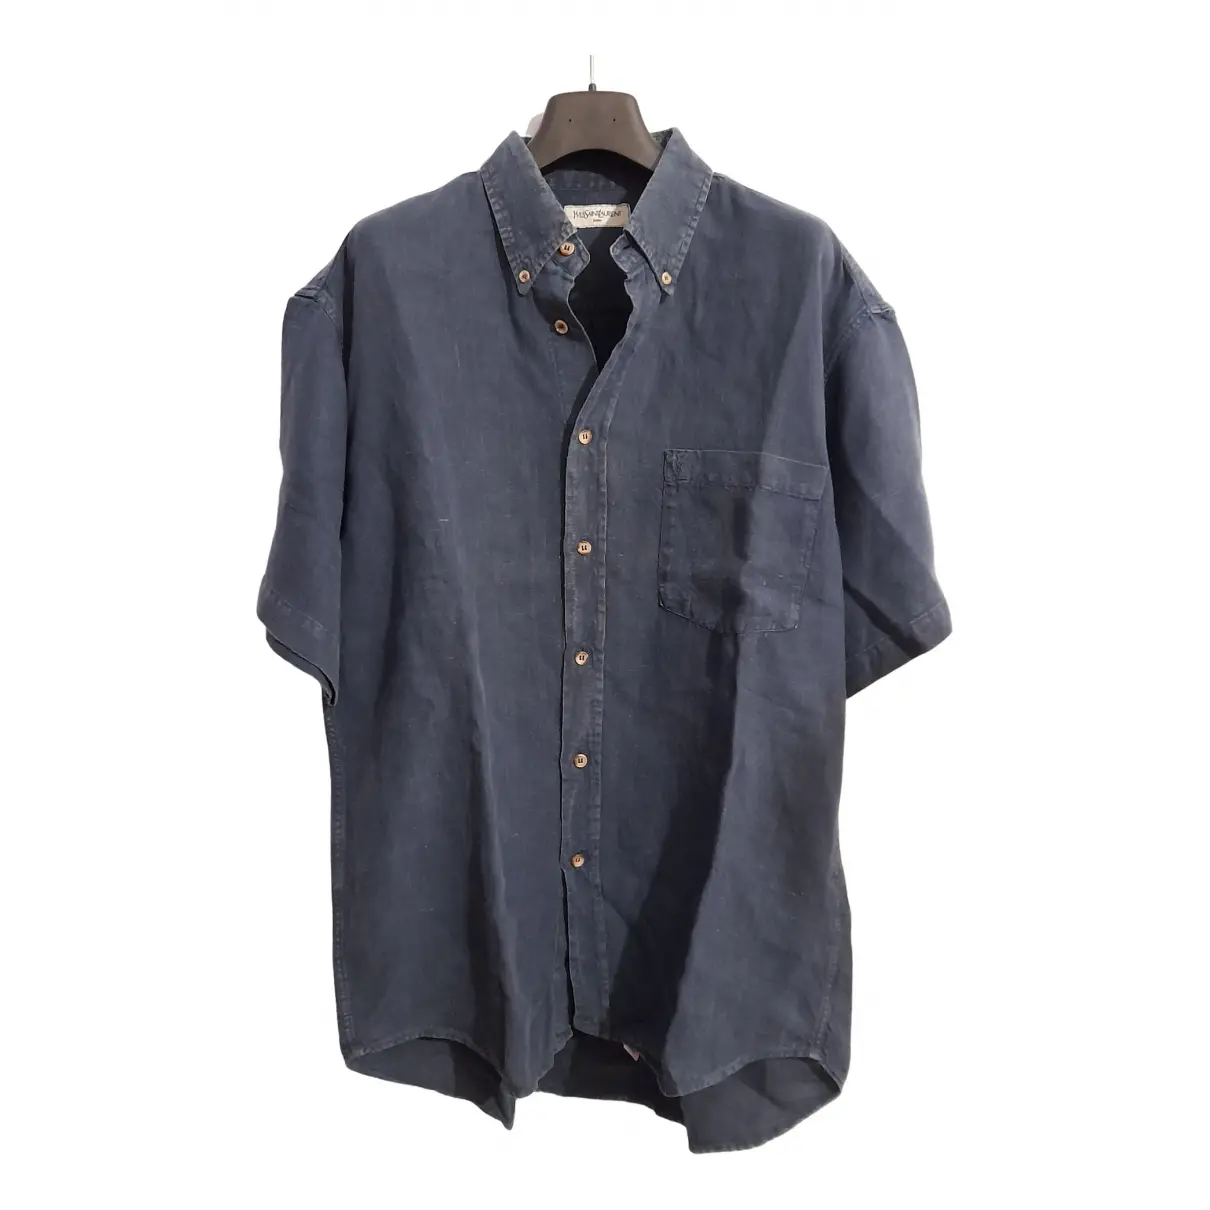 Linen shirt Yves Saint Laurent - Vintage